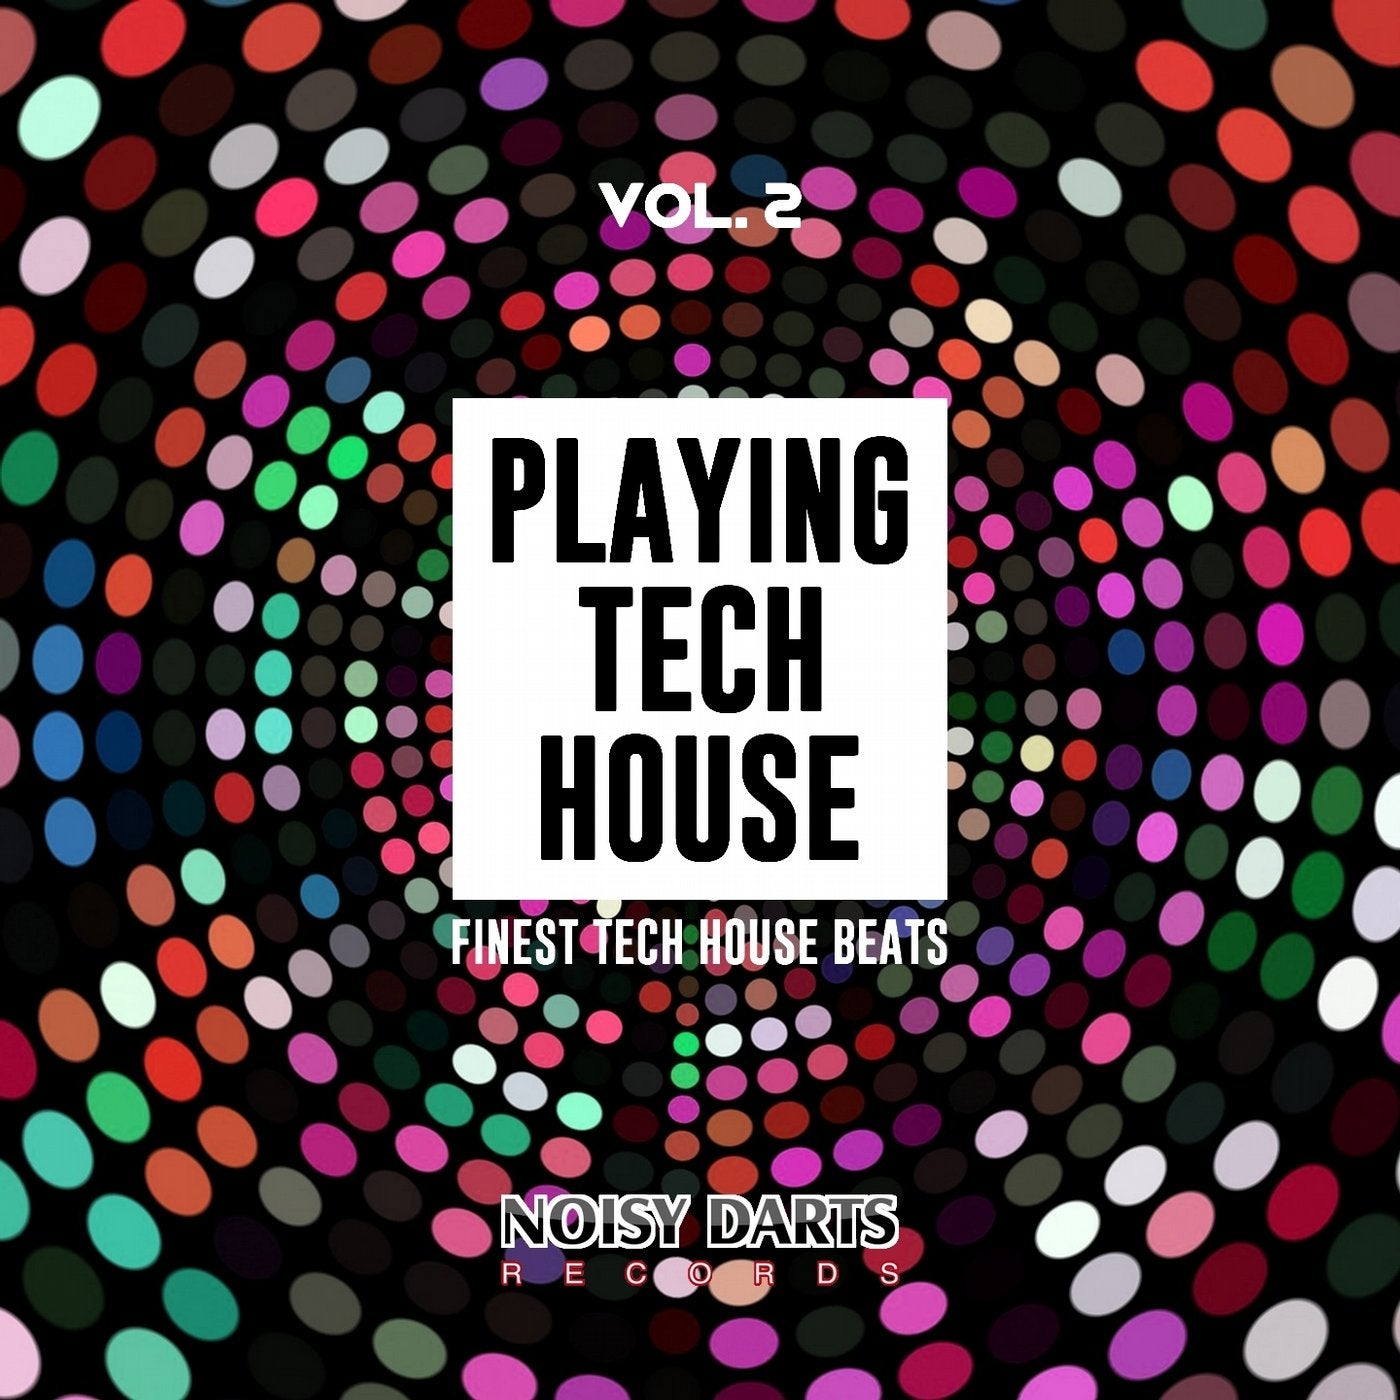 Playing Tech House, Vol. 2 (Finest Tech House Beats)